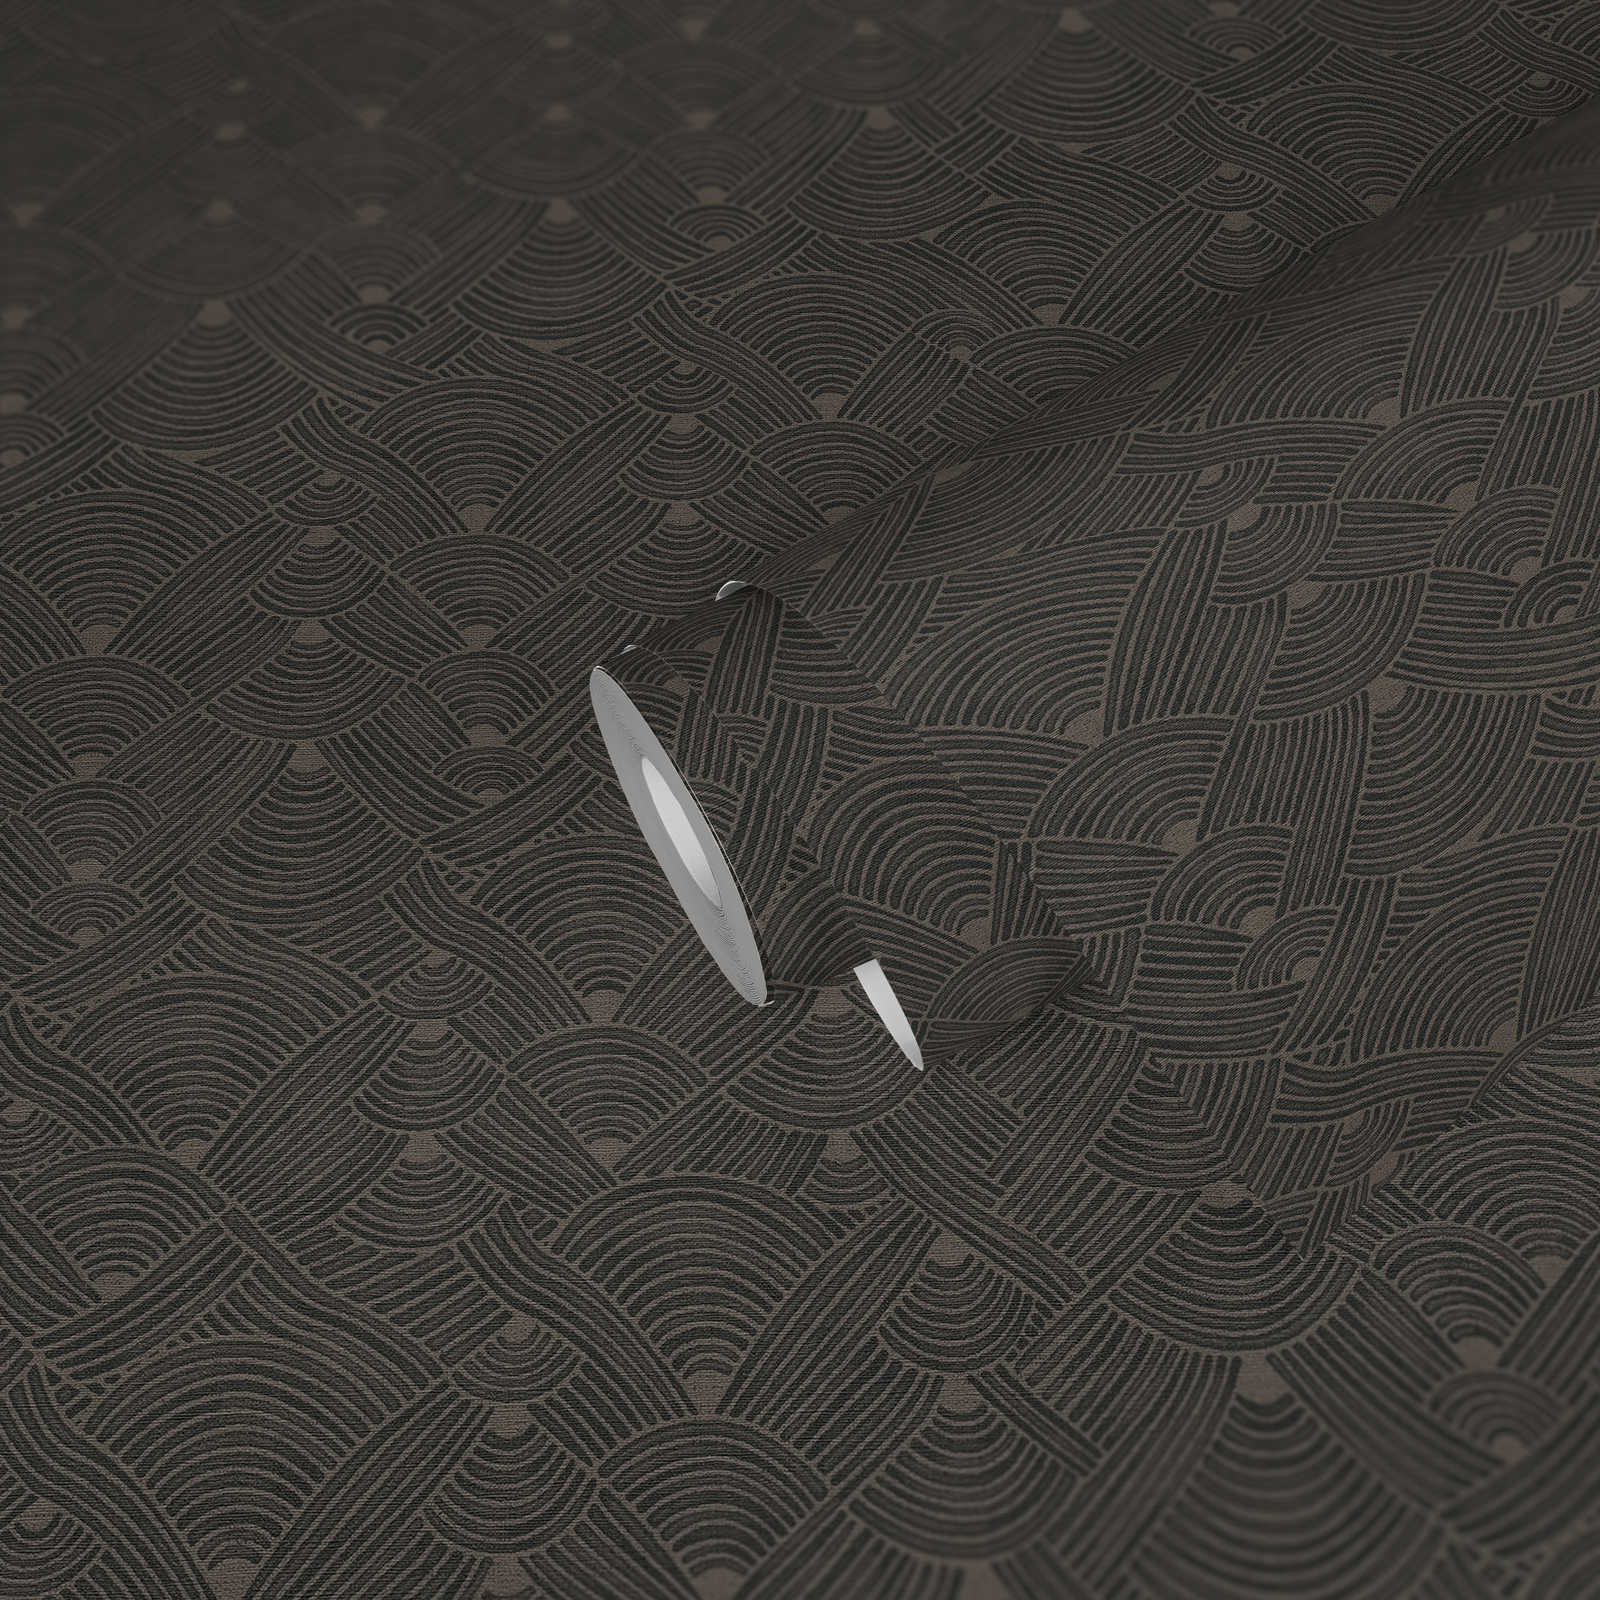             Dark wallpaper braided motif with texture design - grey, black
        